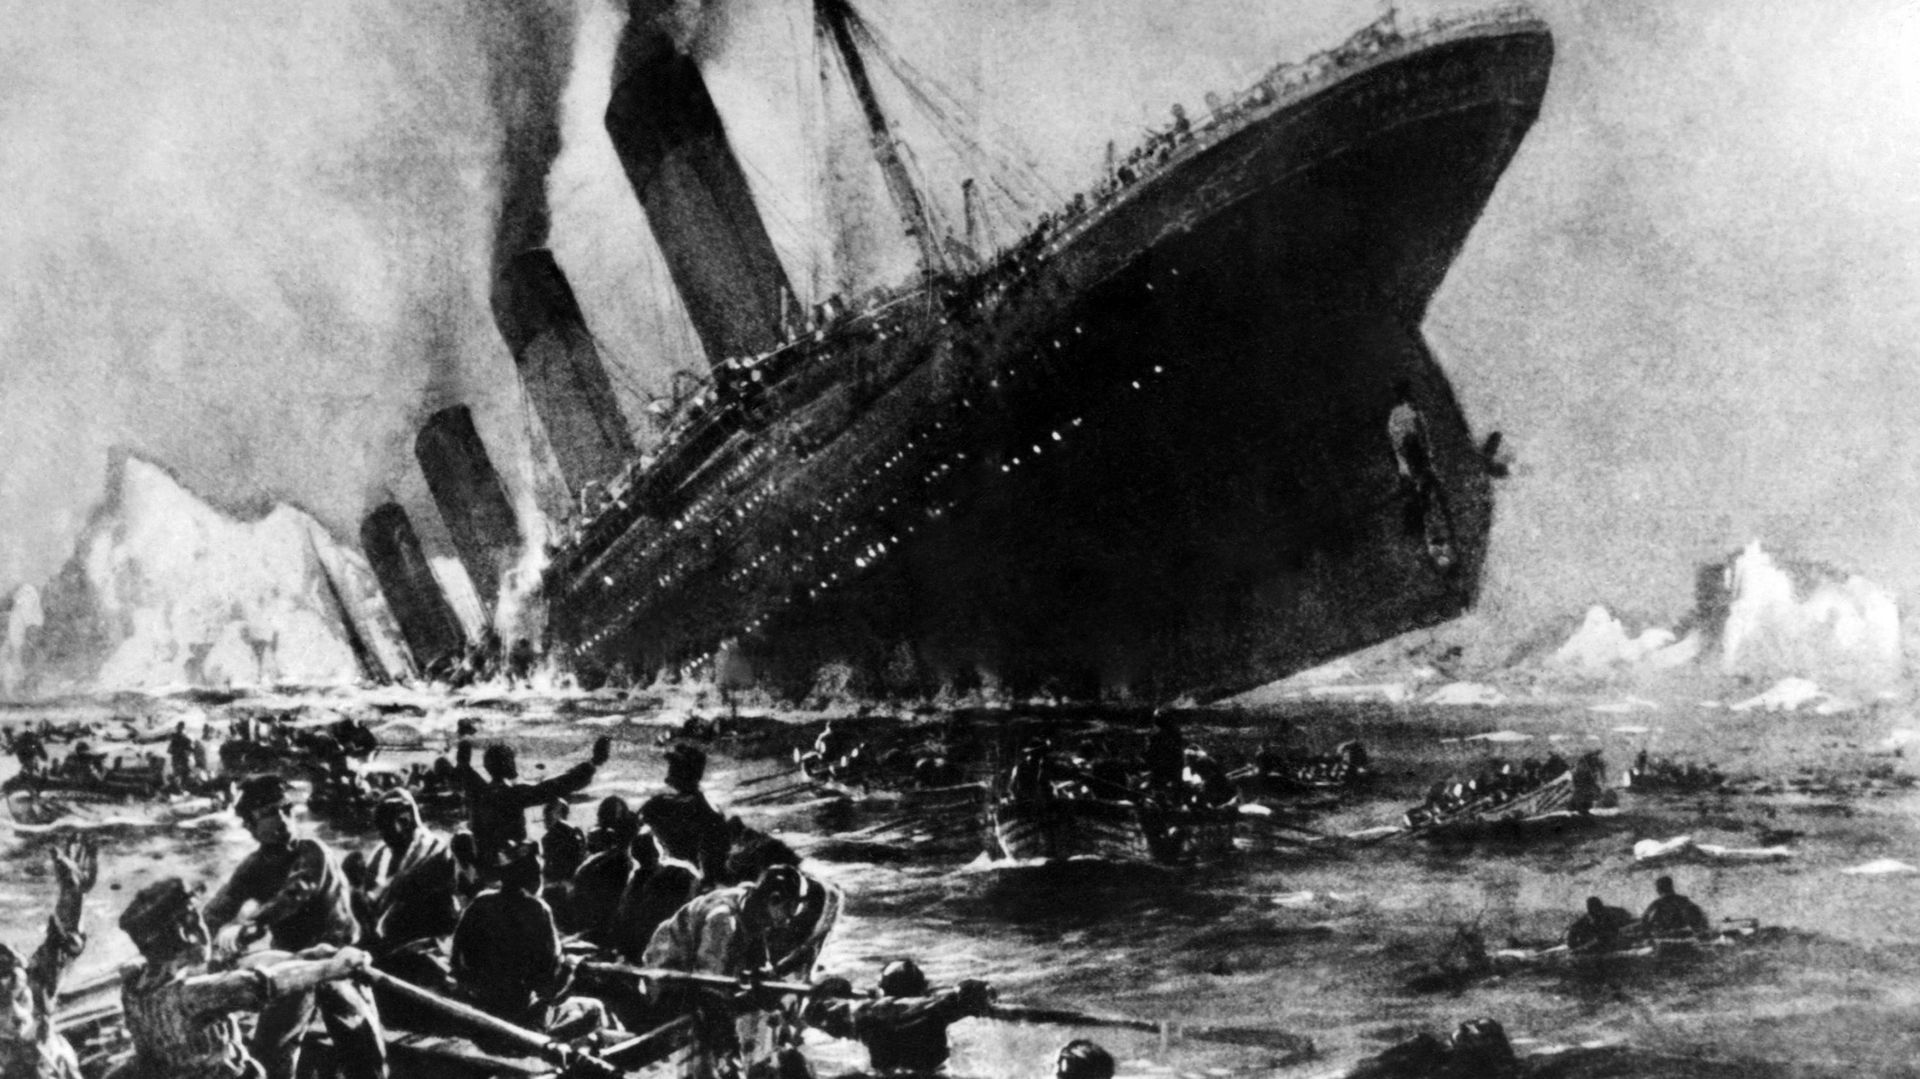 Dessin représentant le naufrage du paquebot "Le Titanic", dans la nuit du 14 au 15 avril 1912 dans l'Atlantique nord, après avoir heurté un iceberg au cours de son voyage inaugural.